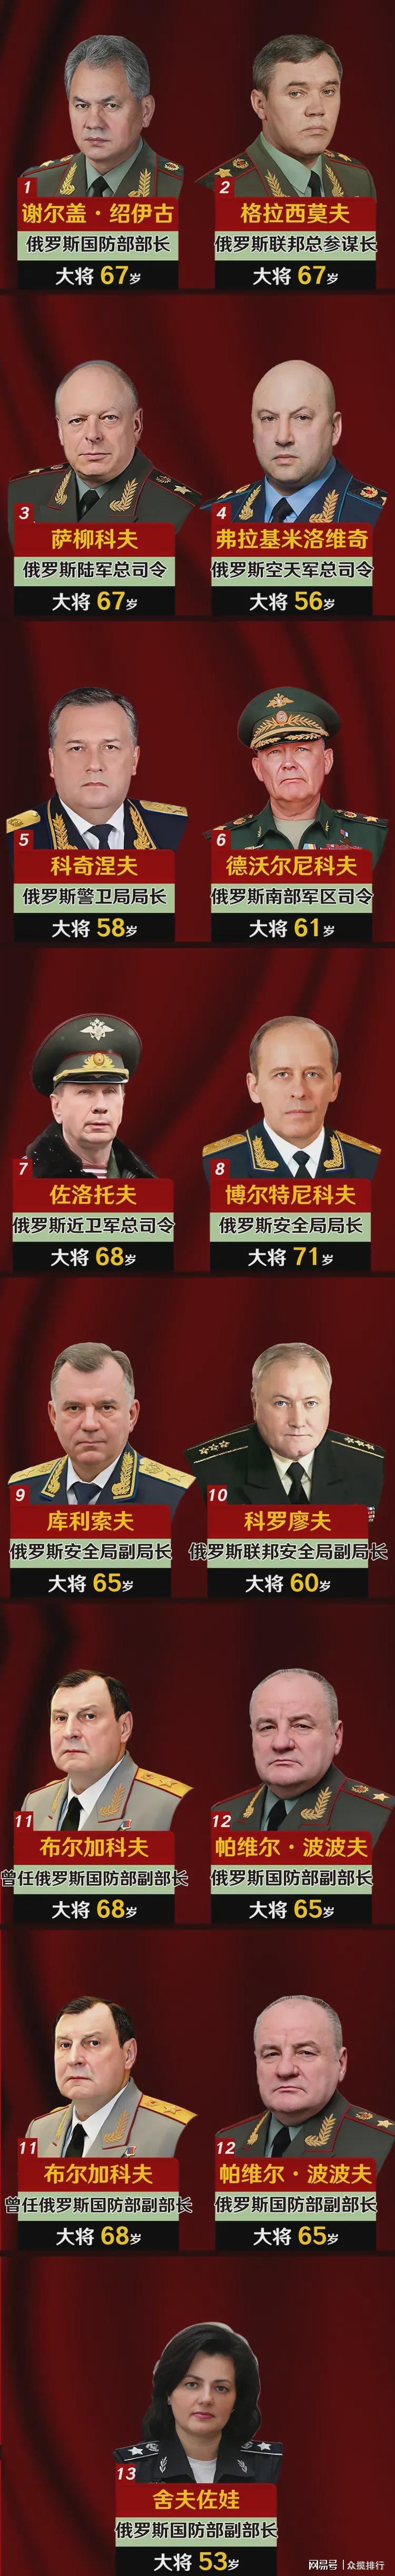 俄罗斯现役13位大将及职位一览图个个都是精干人物